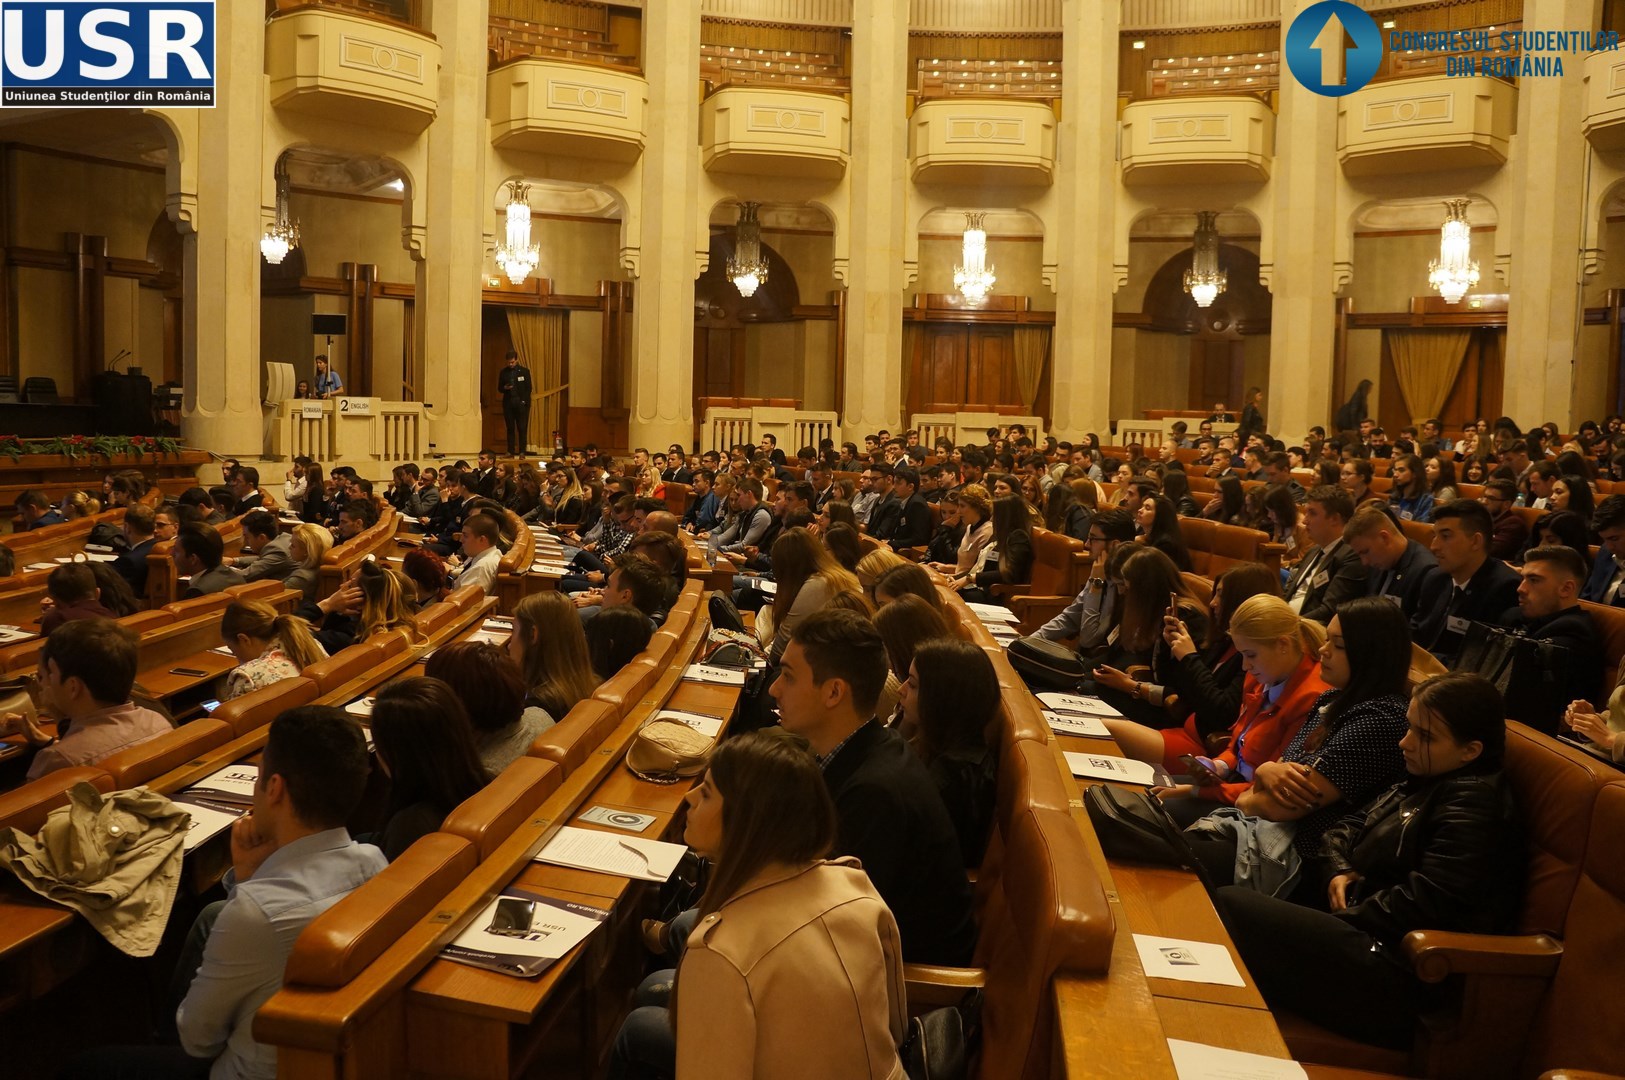 Congresul Studentilor din Romania